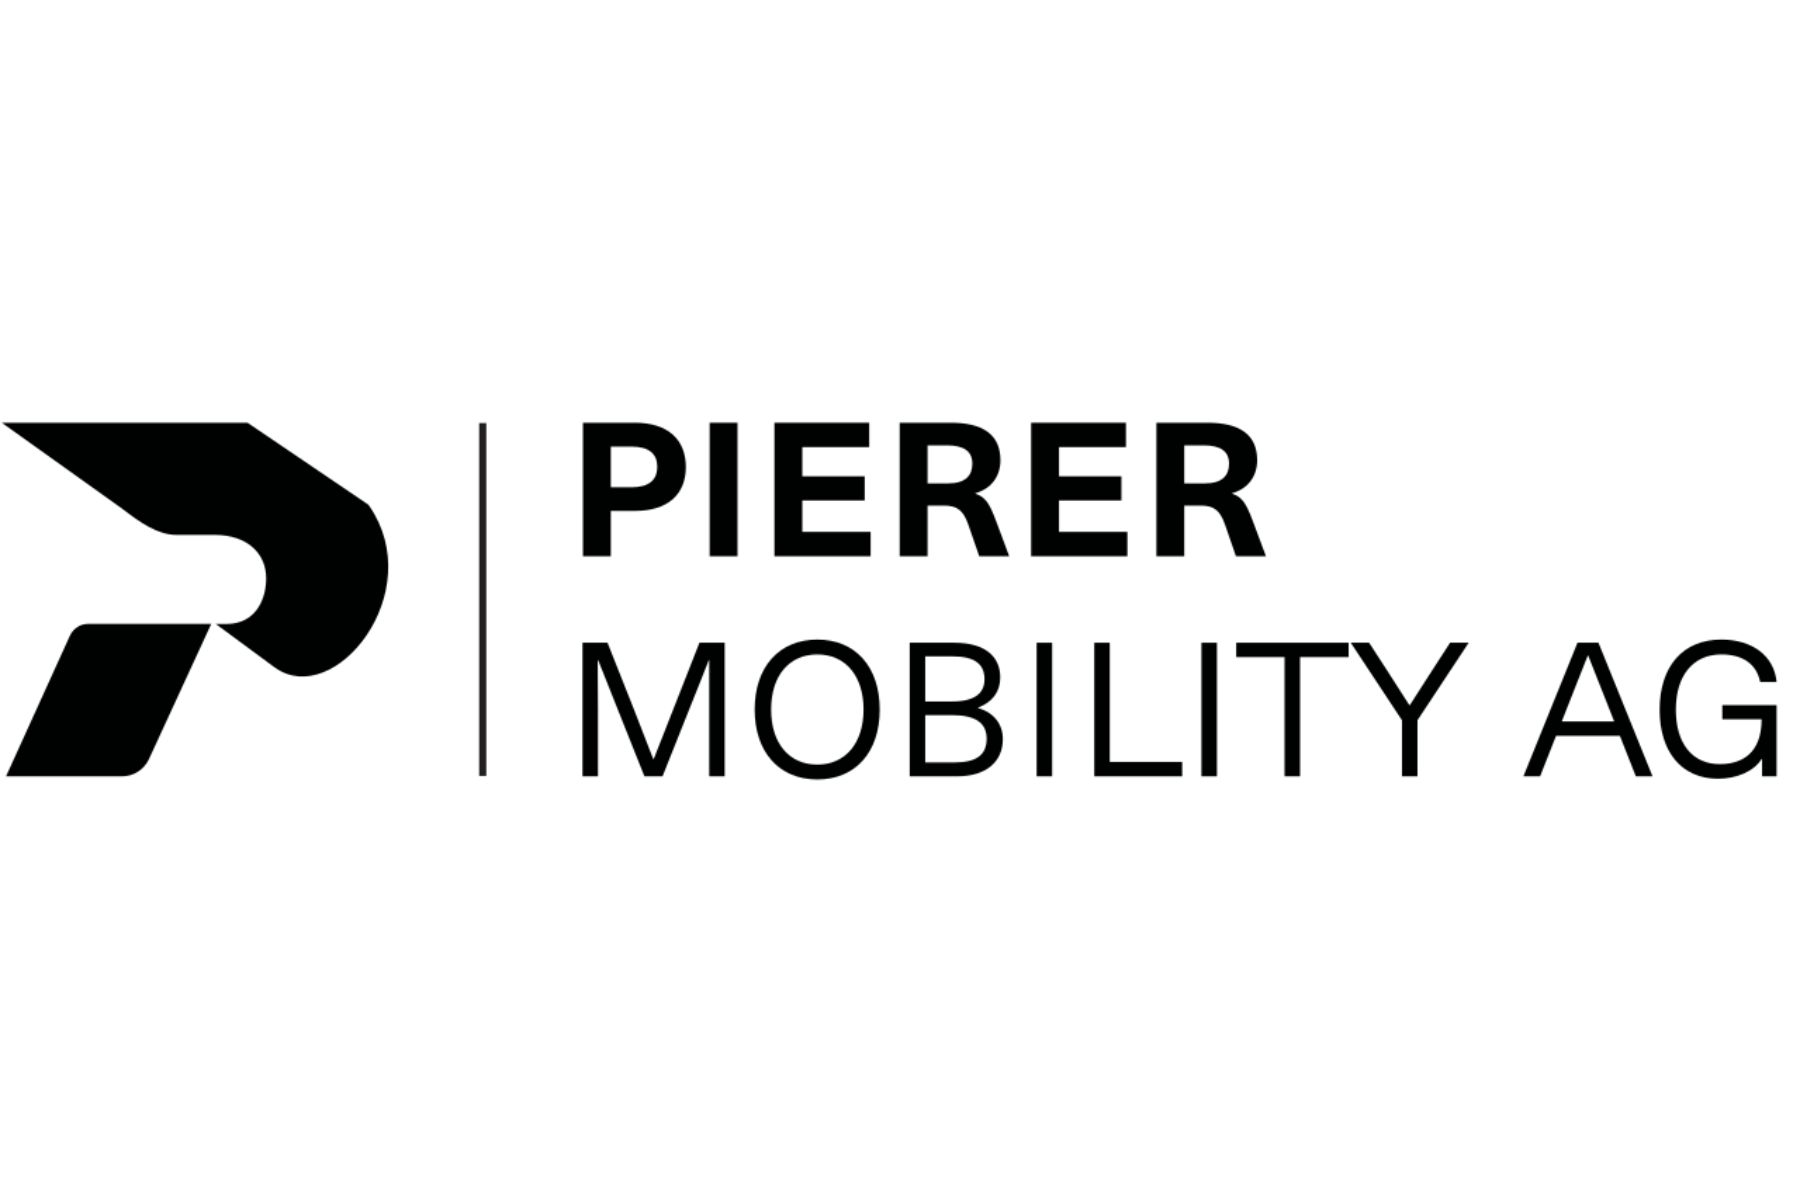 PIERER Mobility verkauft Felt und konzentriert sich auf ihre Kernmarken